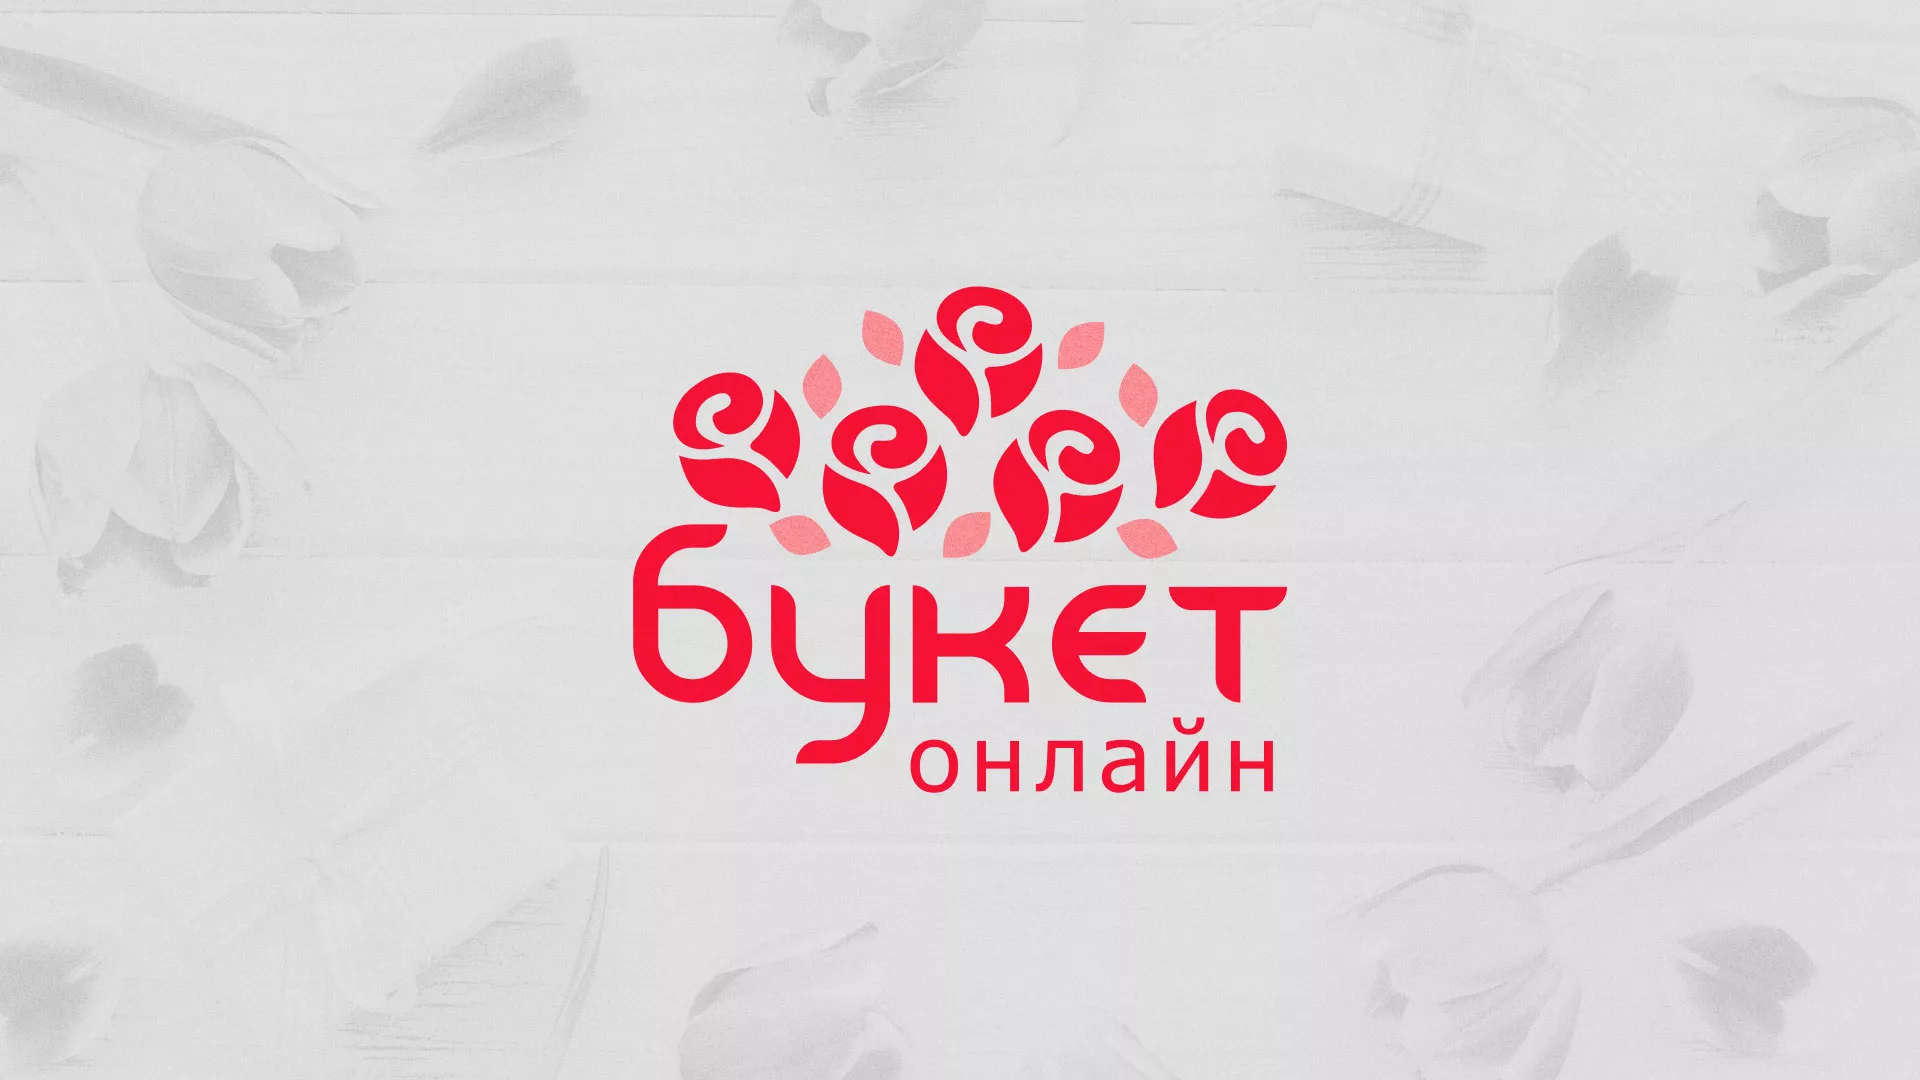 Создание интернет-магазина «Букет-онлайн» по цветам в Алексеевке